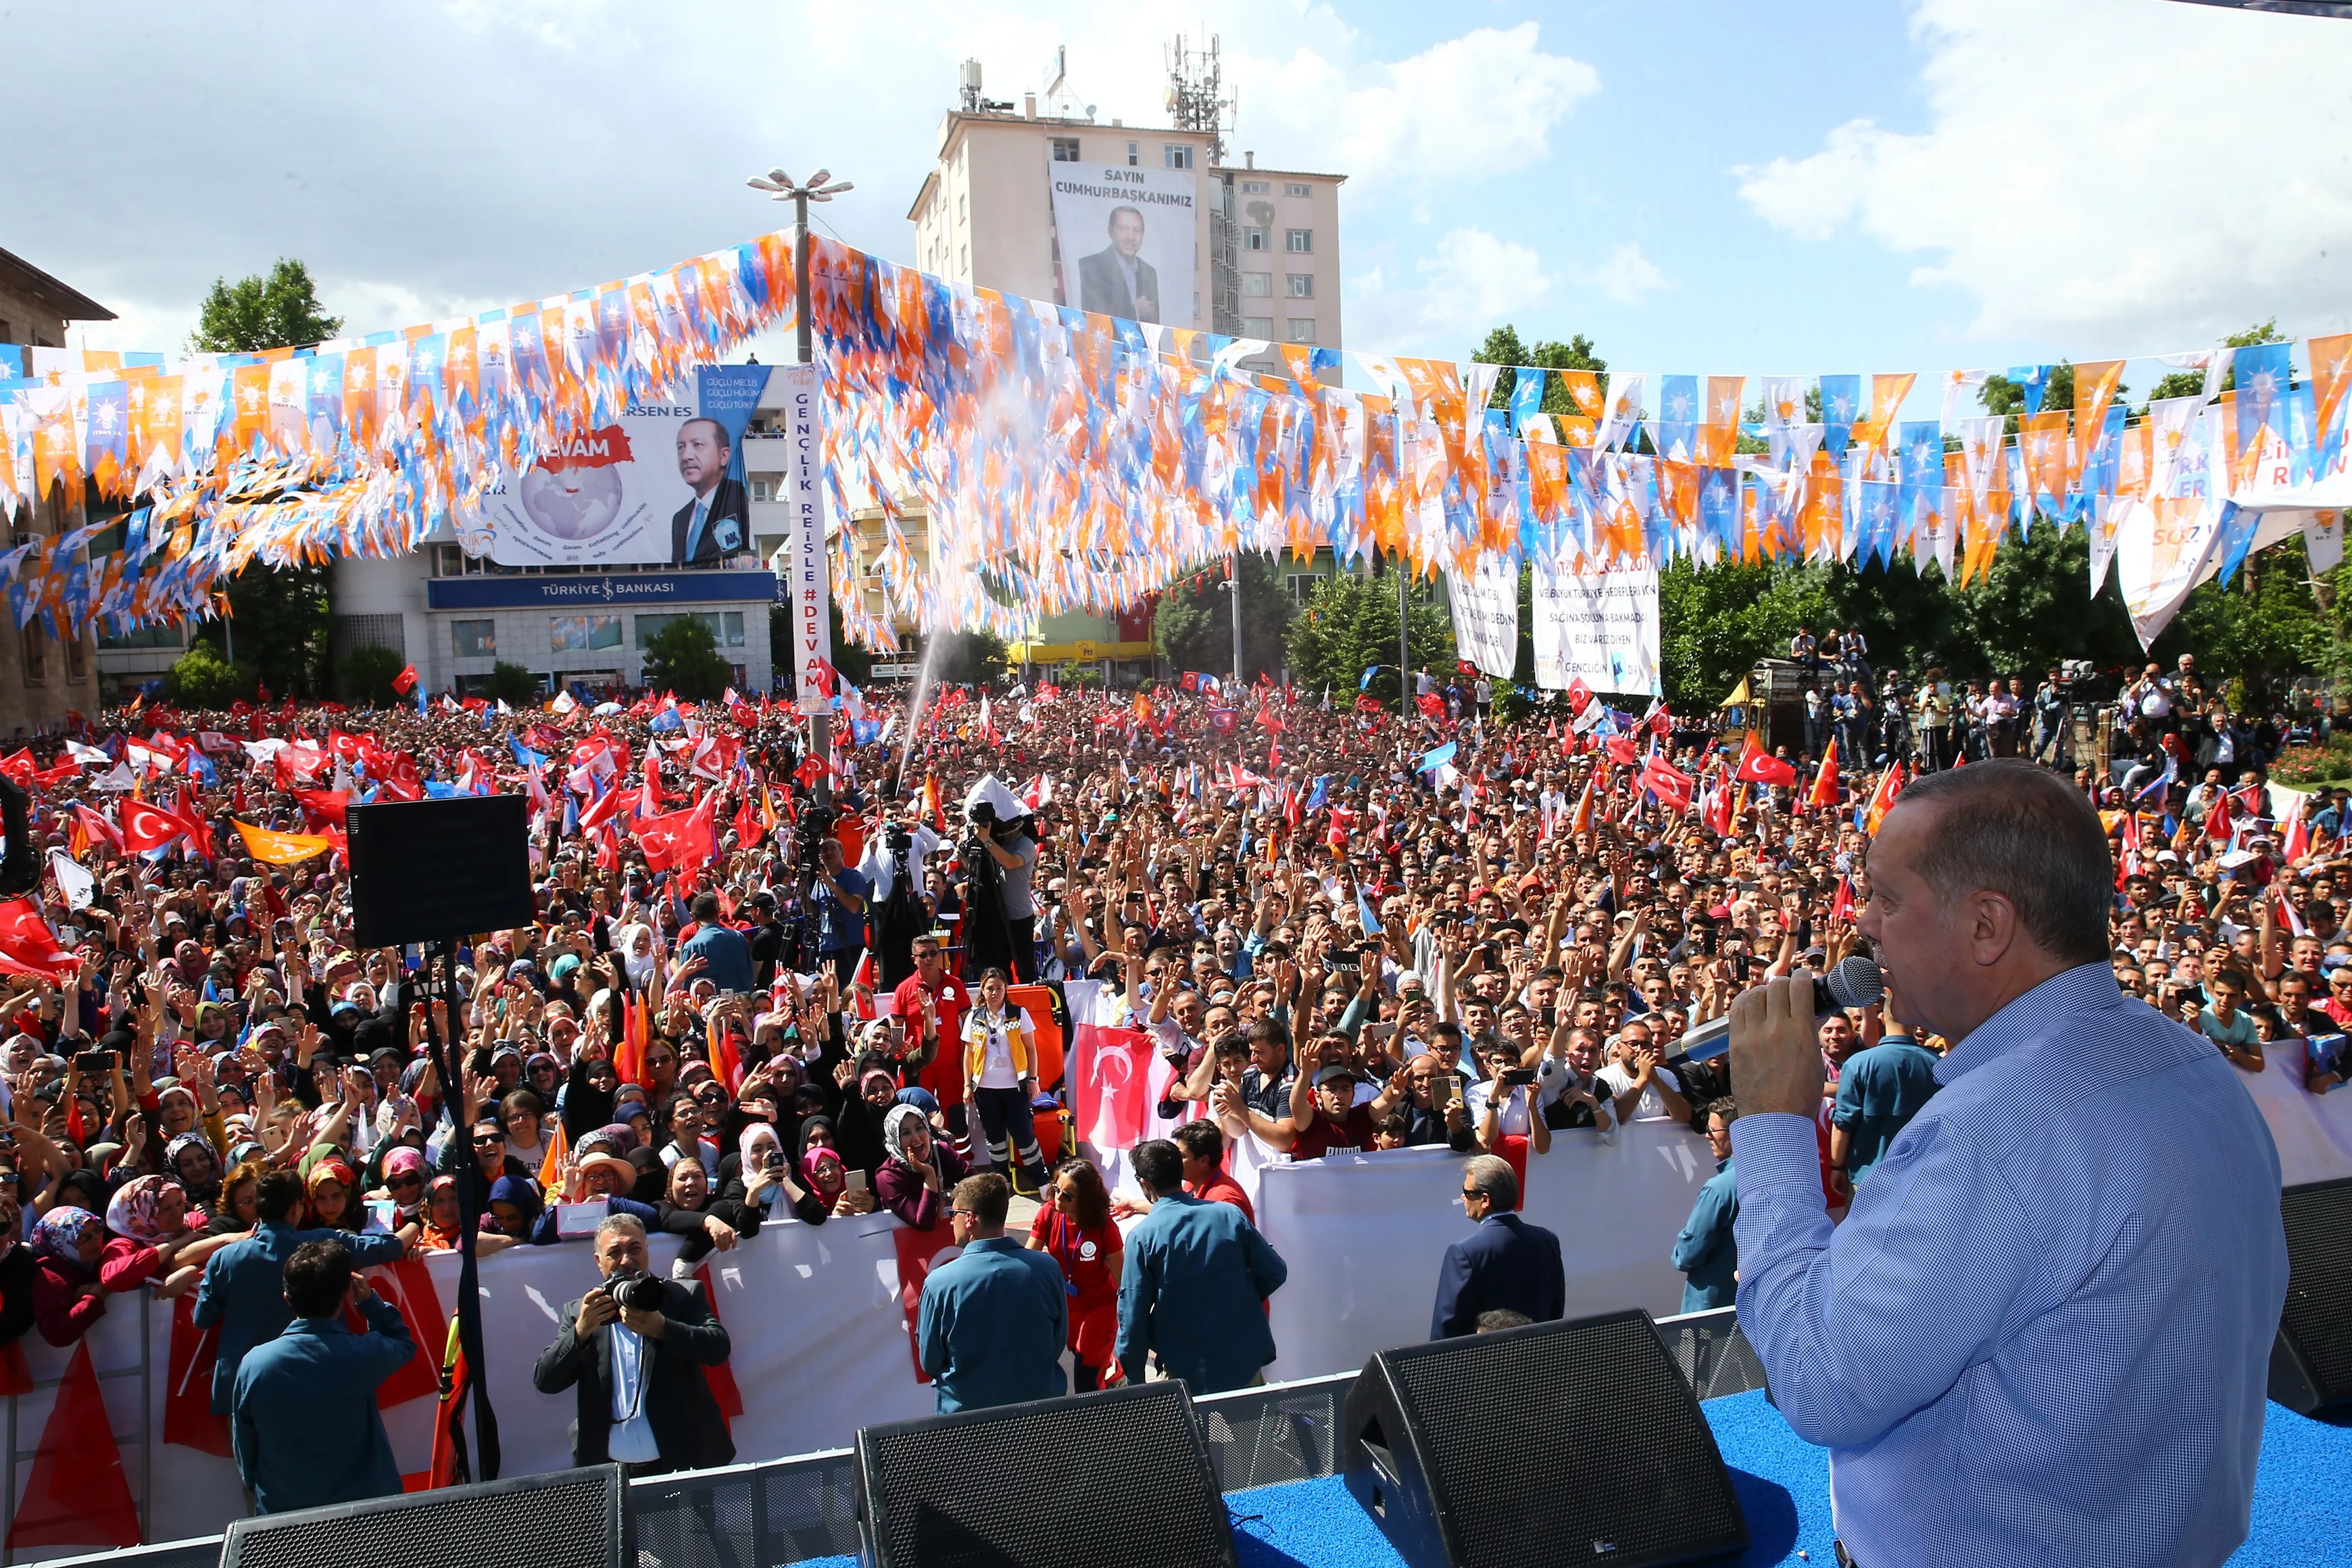 Cumhurbaşkanı Erdoğan: "Çıraklarla mıraklarla bu iş olmaz, bu iş yürek işi yürek"